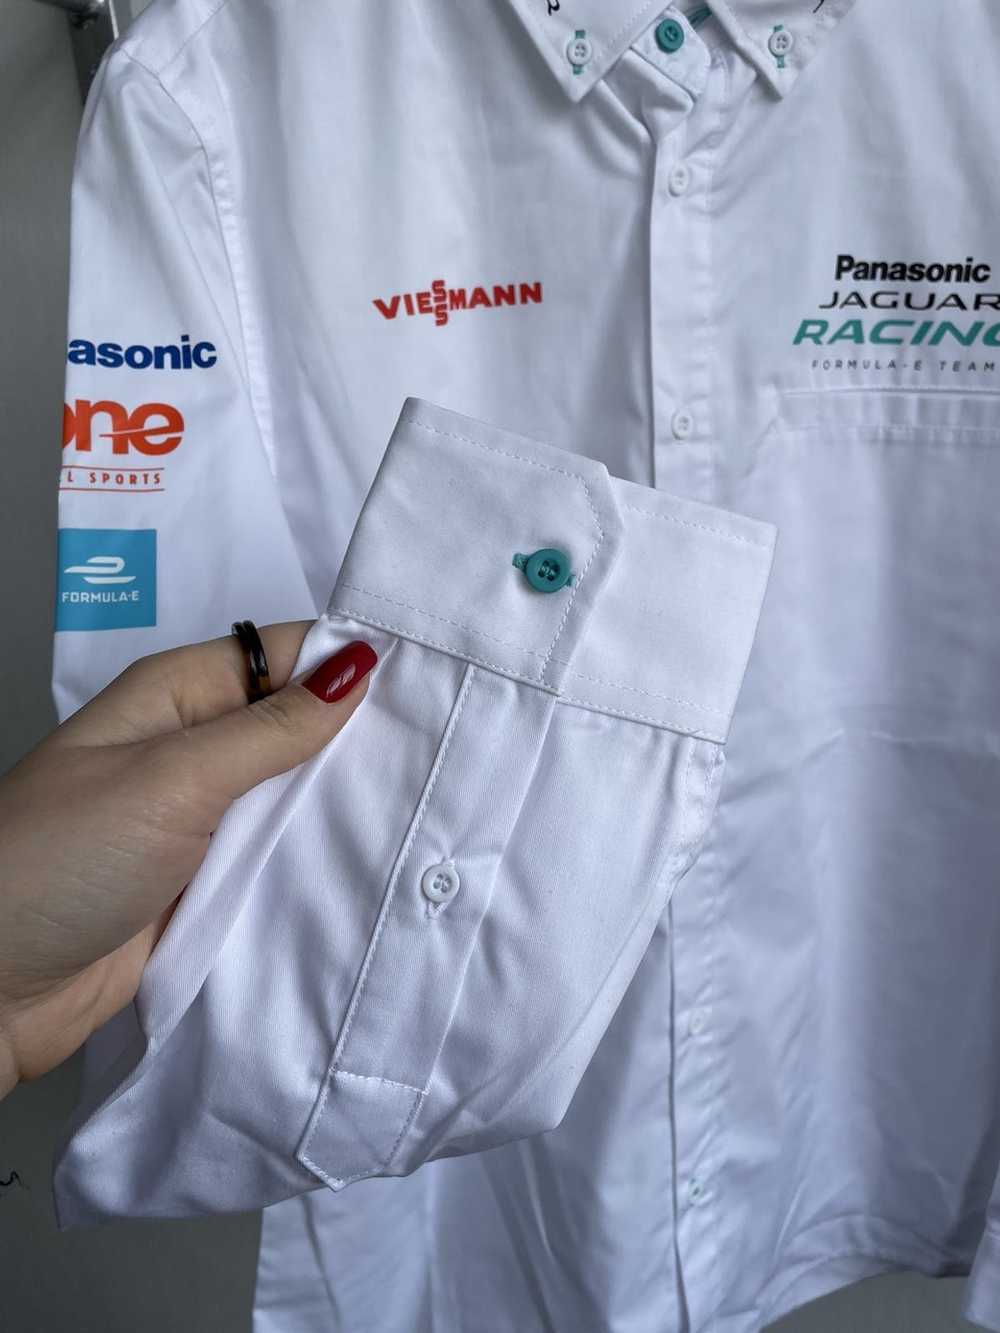 Formula Uno × Racing Jaguar F1 Racing Shirt - image 7